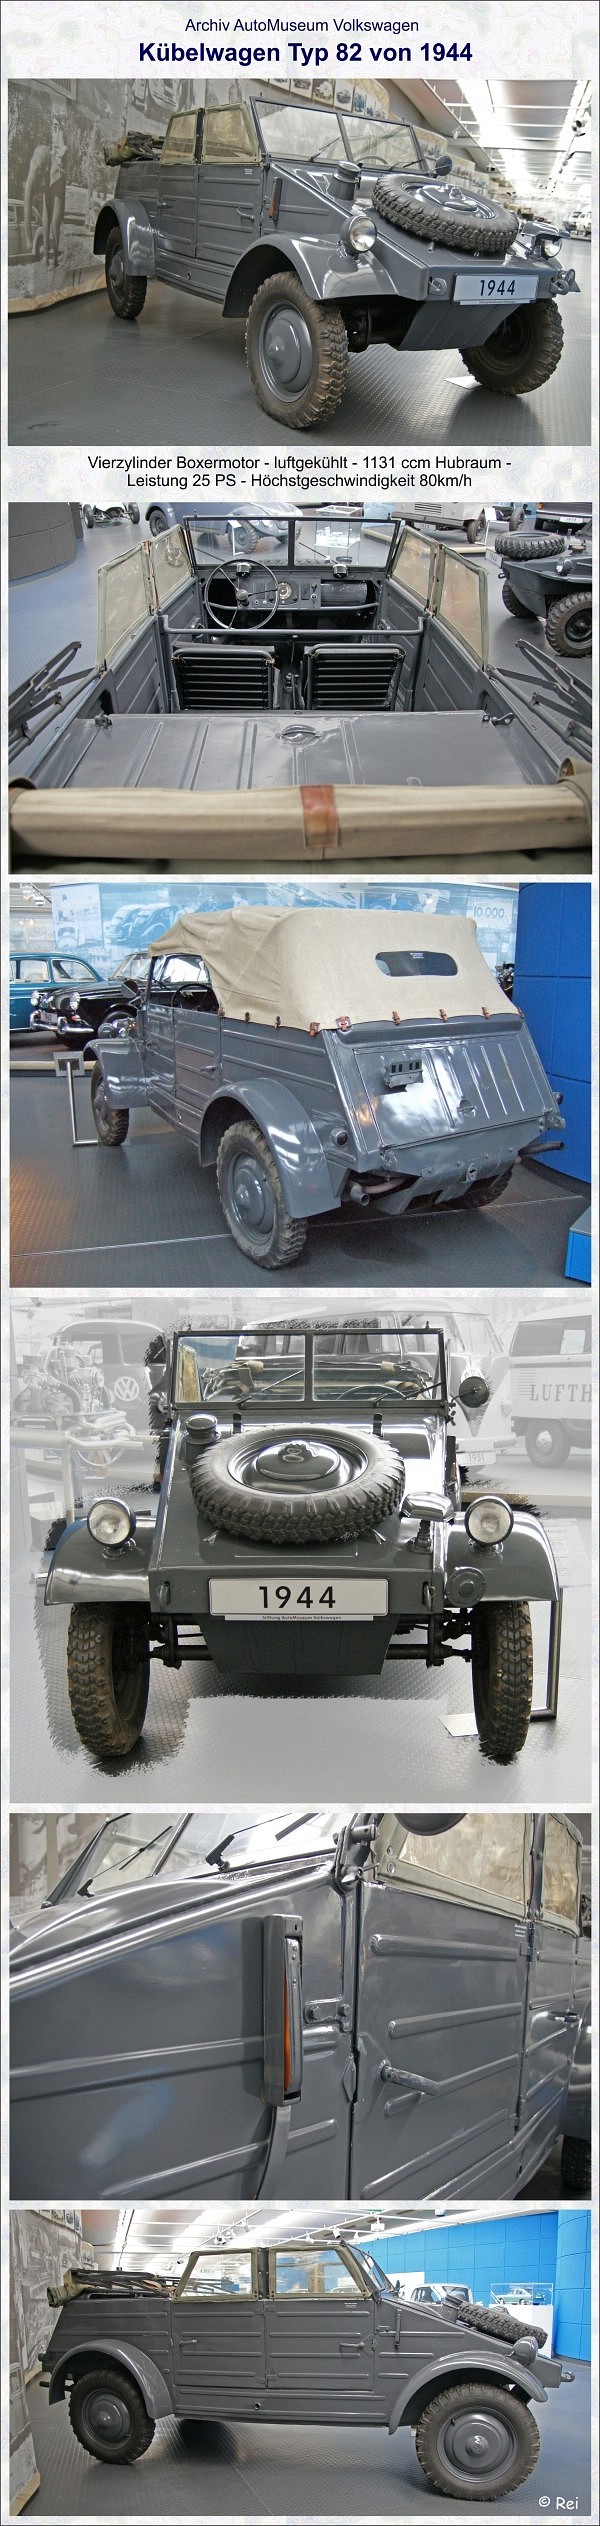 VW Kübelwagen von 1944